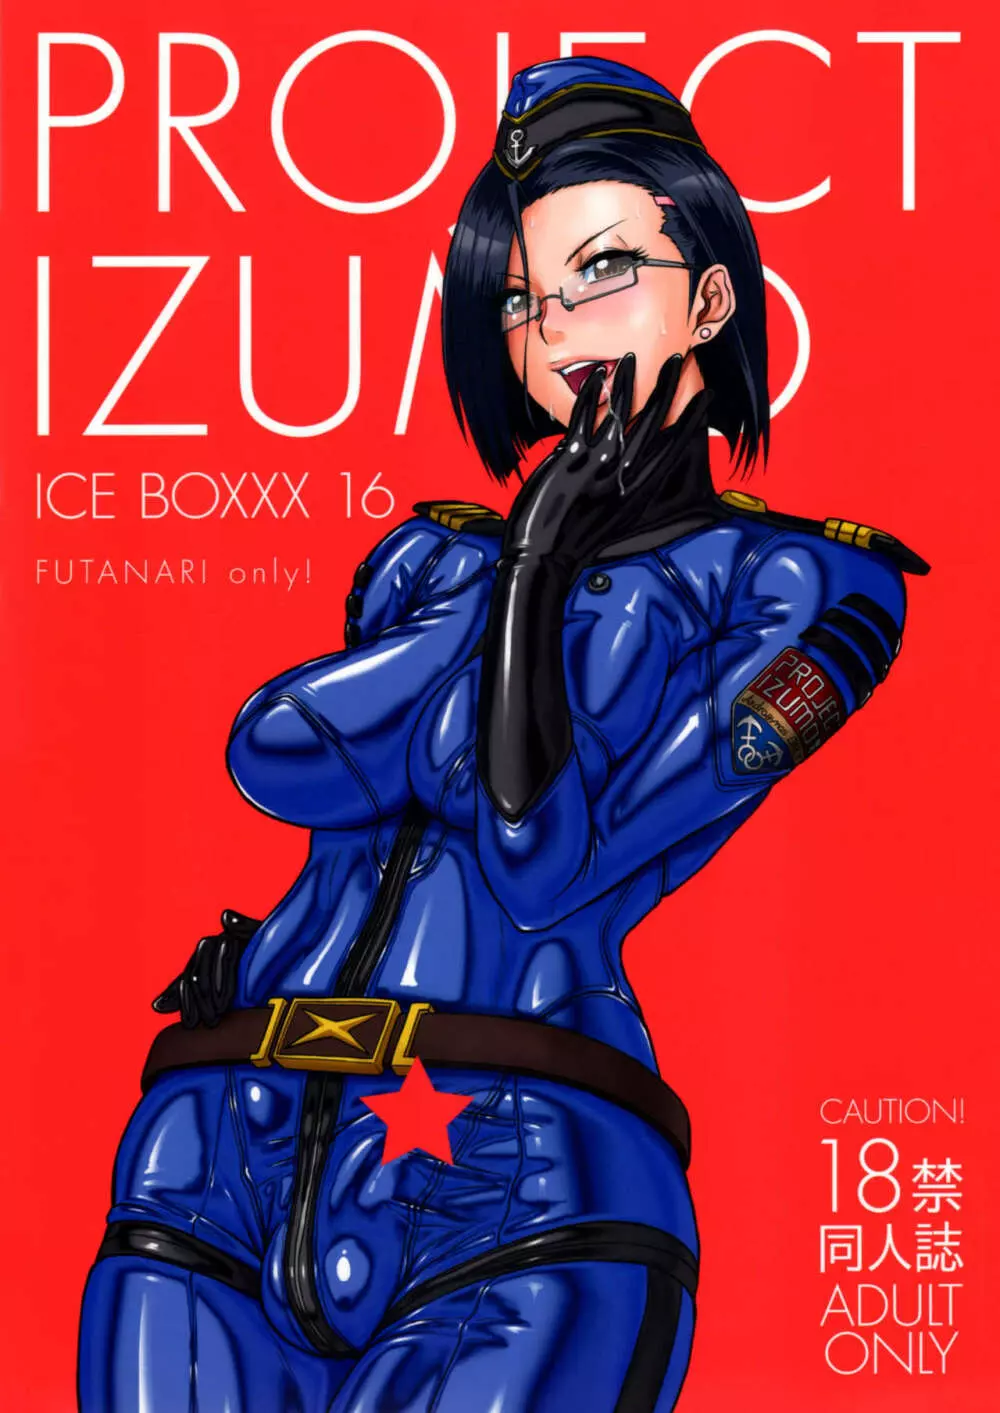 ICE BOXXX 16 / PROJECT IZUMO